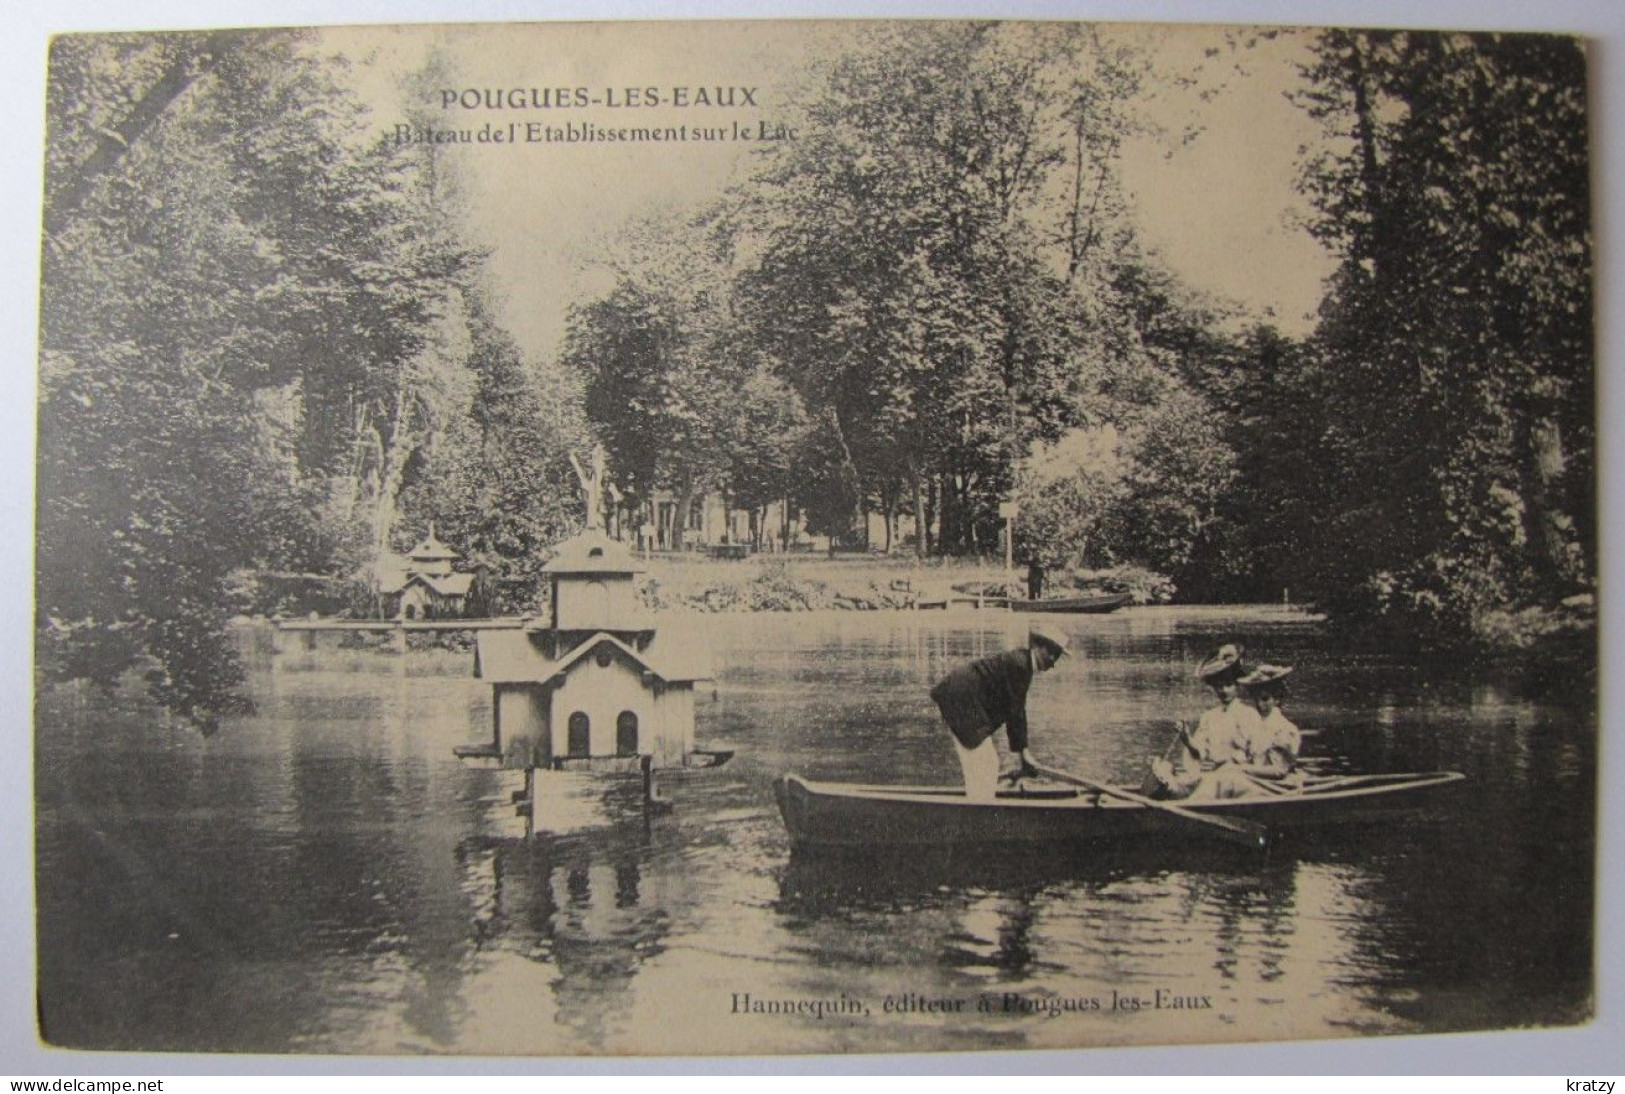 FRANCE - NIEVRE - POUGUES-LES-EAUX - Bateau Et L'Etablissement Sur Le Lac - 1906 - Pougues Les Eaux